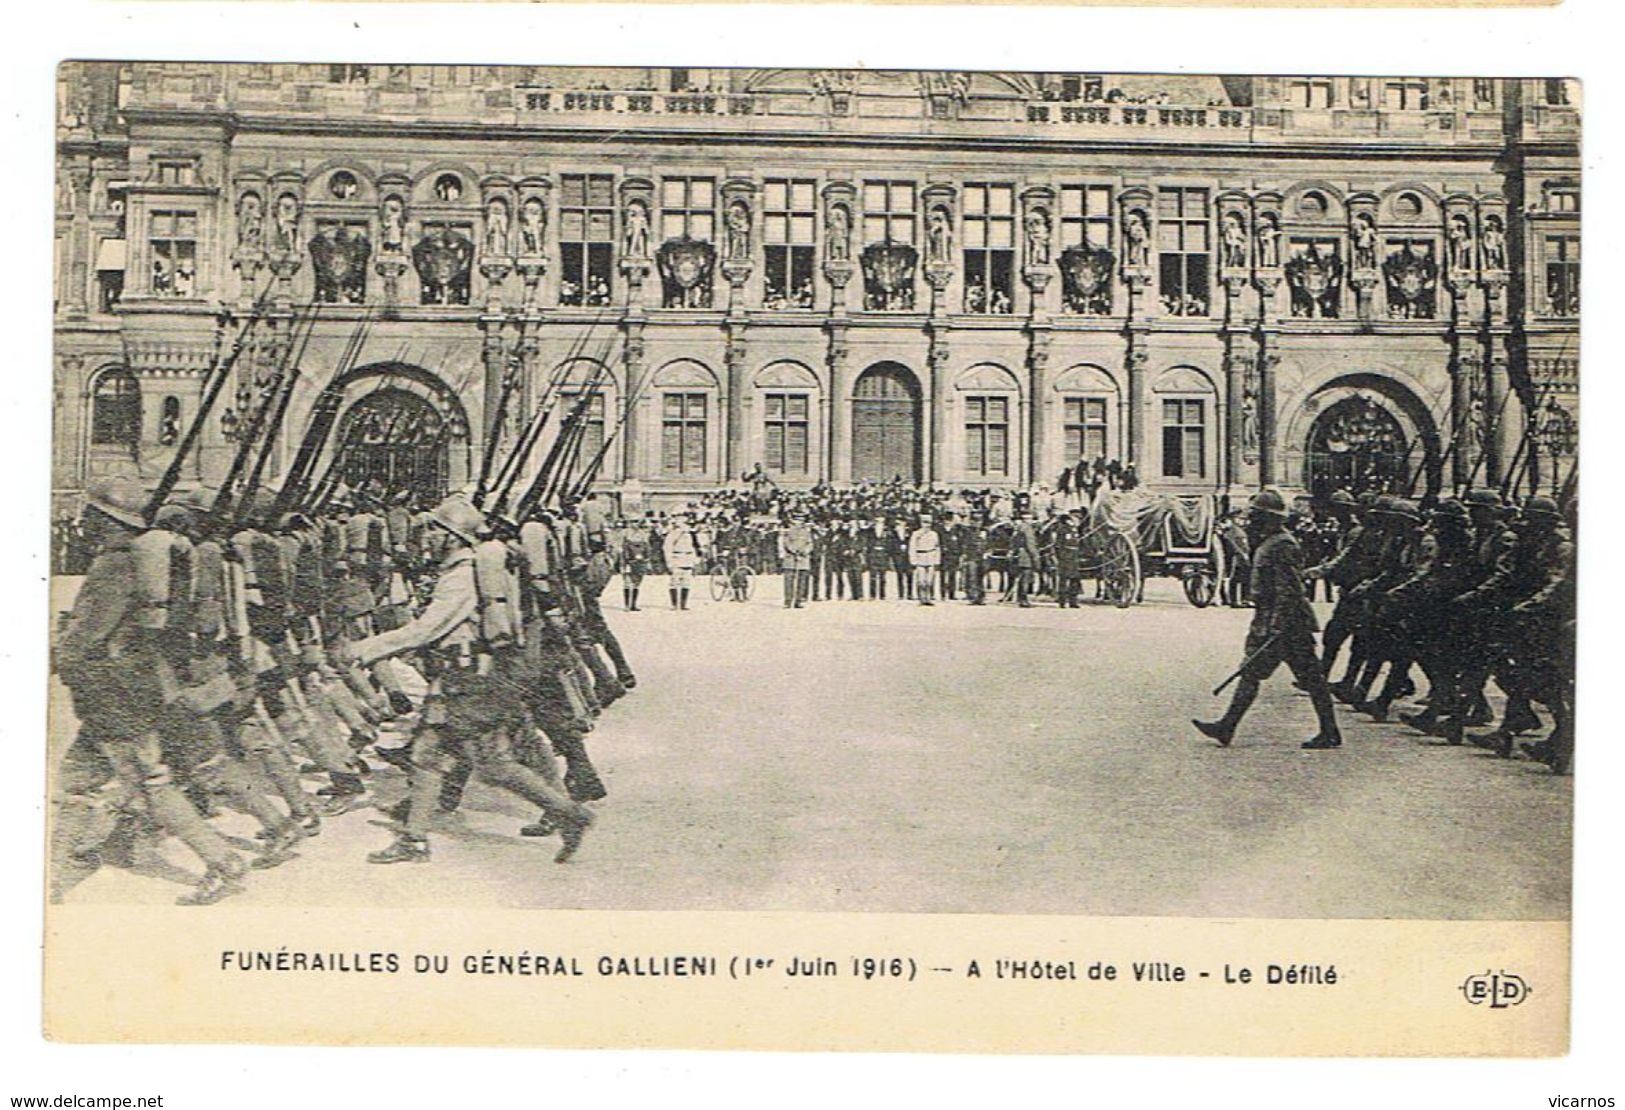 CPA Funerailles du général Gallieni 1er juin 1916 Lot de 11 cartes